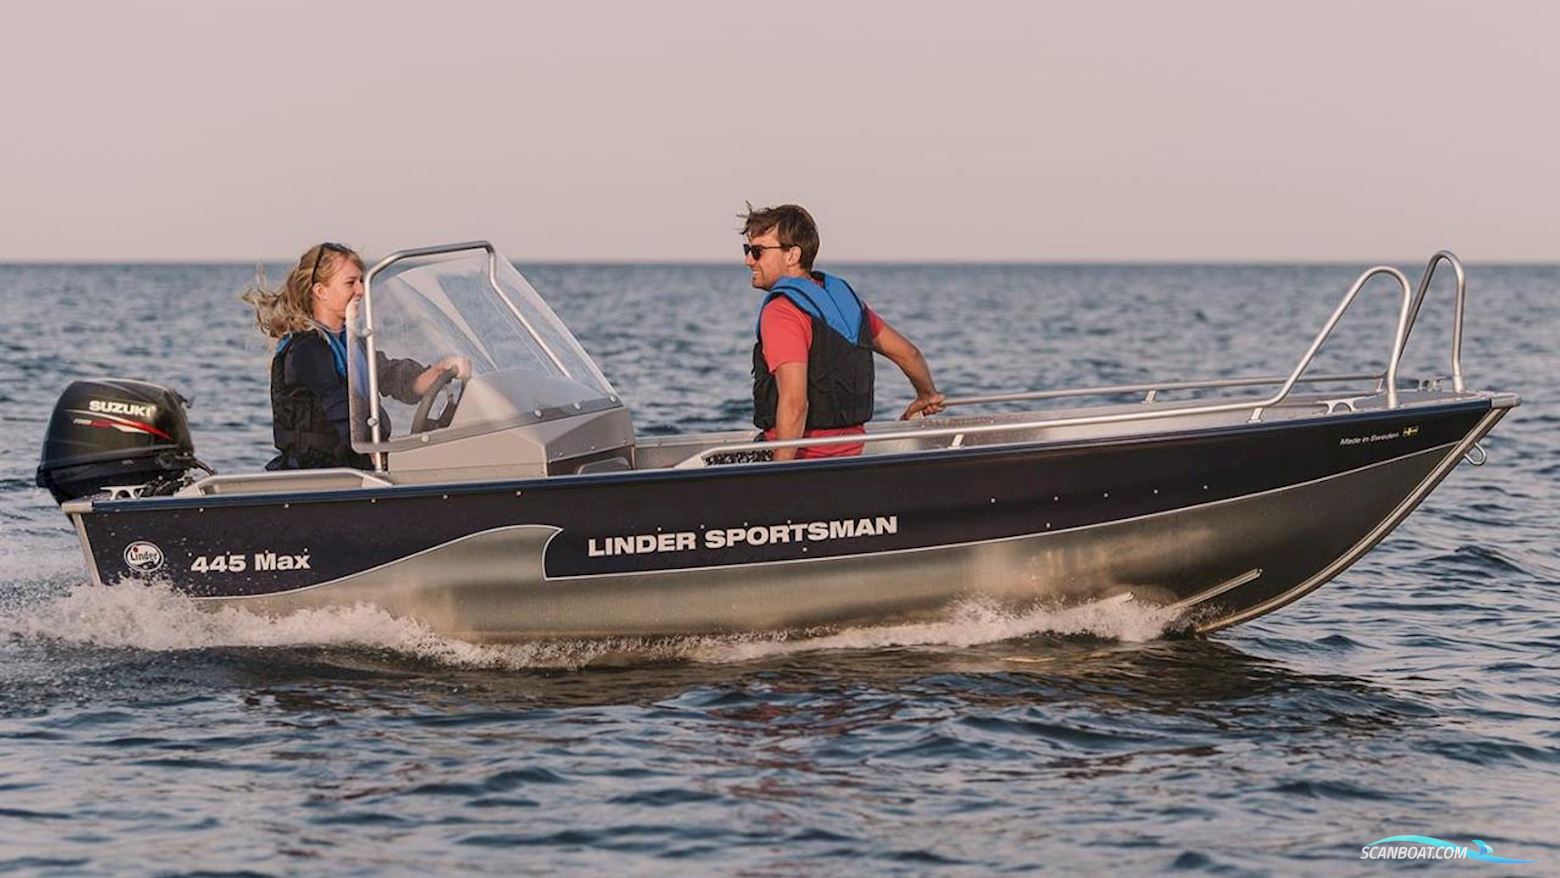 Linder Sportsman 445 Max Motor boat 2022, with Suzuki engine, Sweden